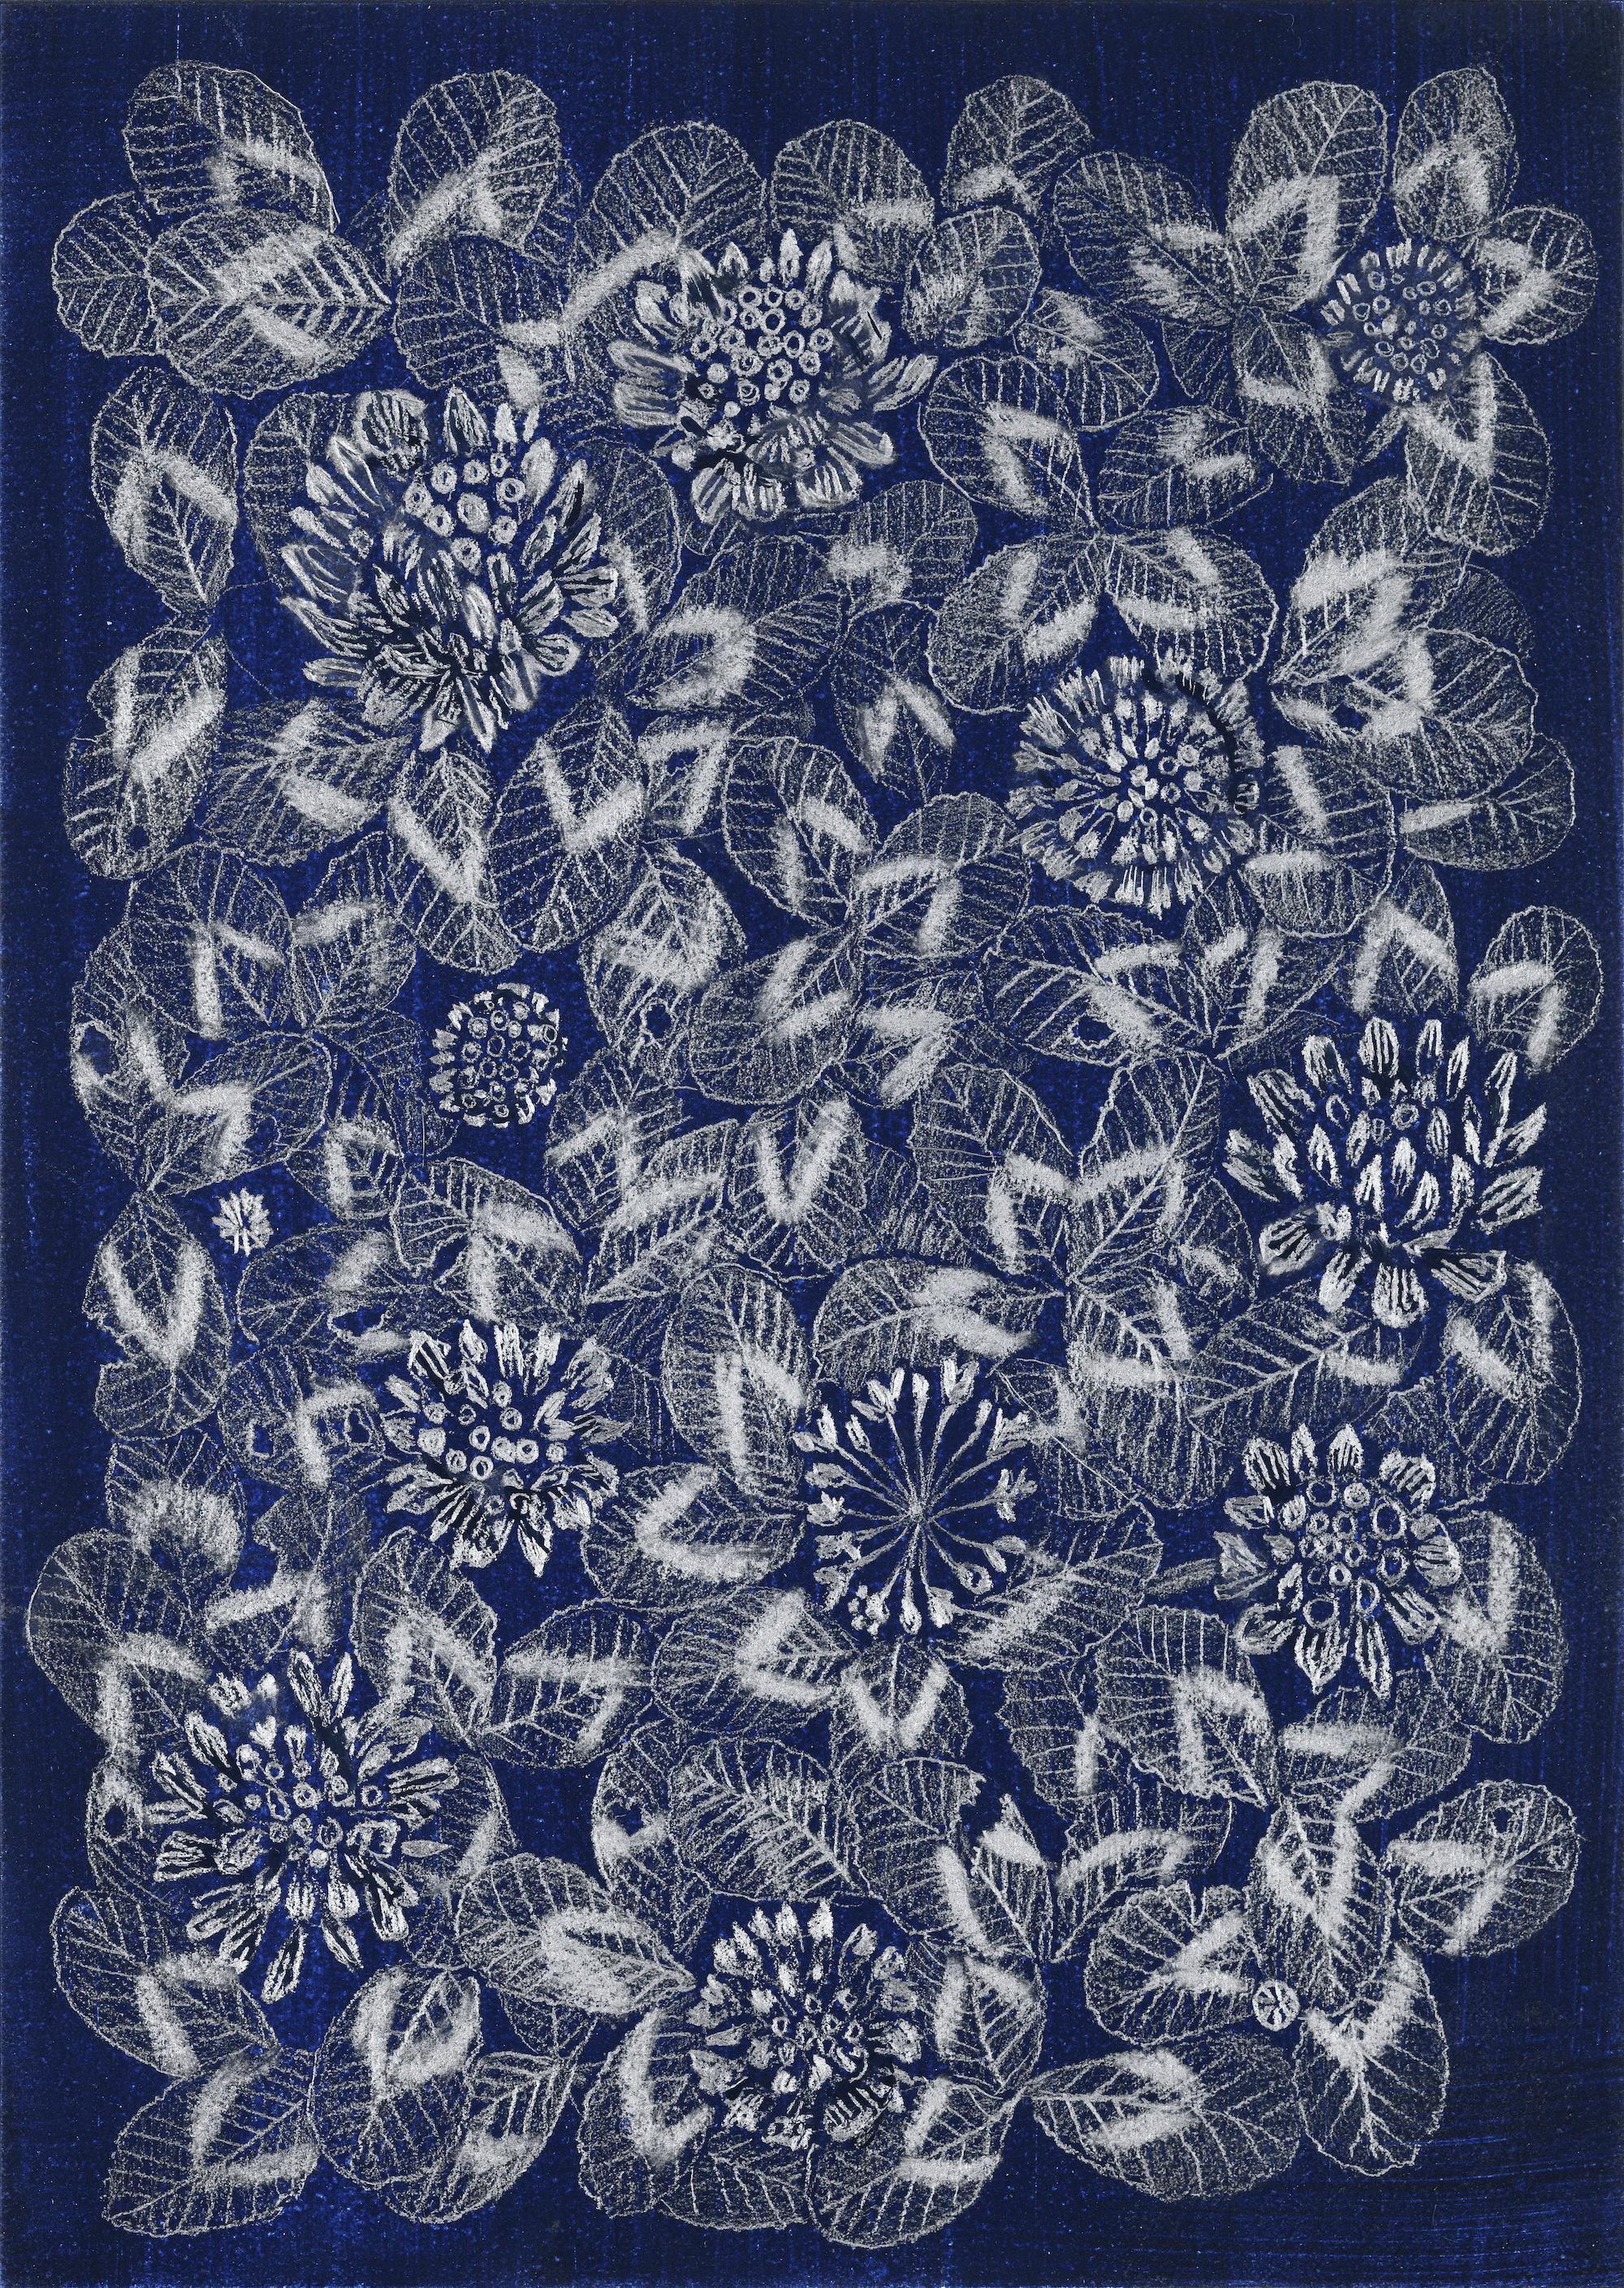 Blauer Kleeblatt 1, gemusterte Blumenstillleben-Zeichnung